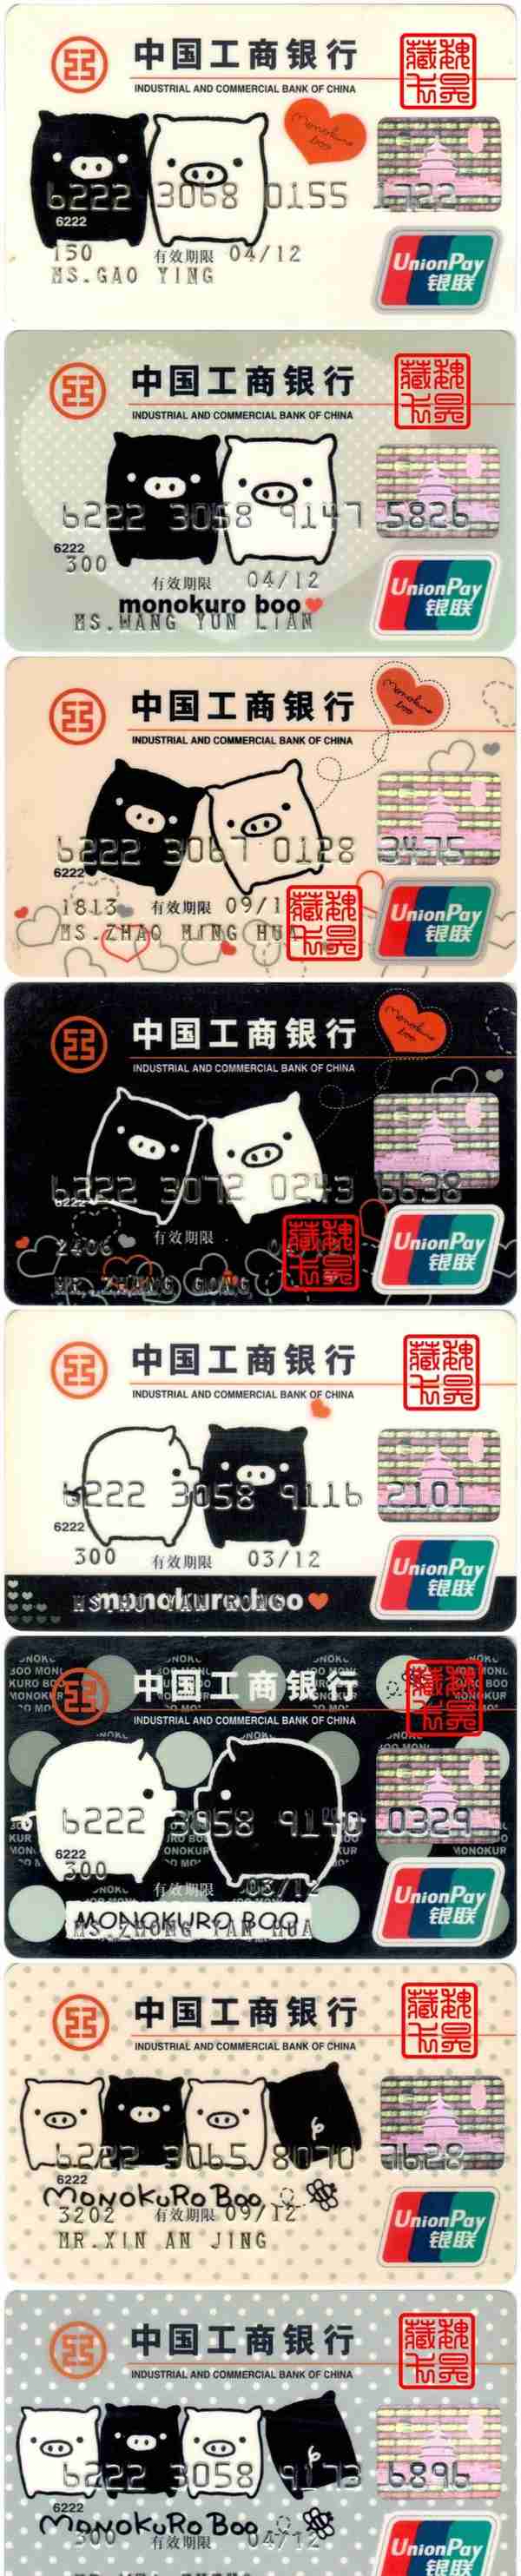 生肖卡-中国工商银行-快乐‘猪’福信用卡